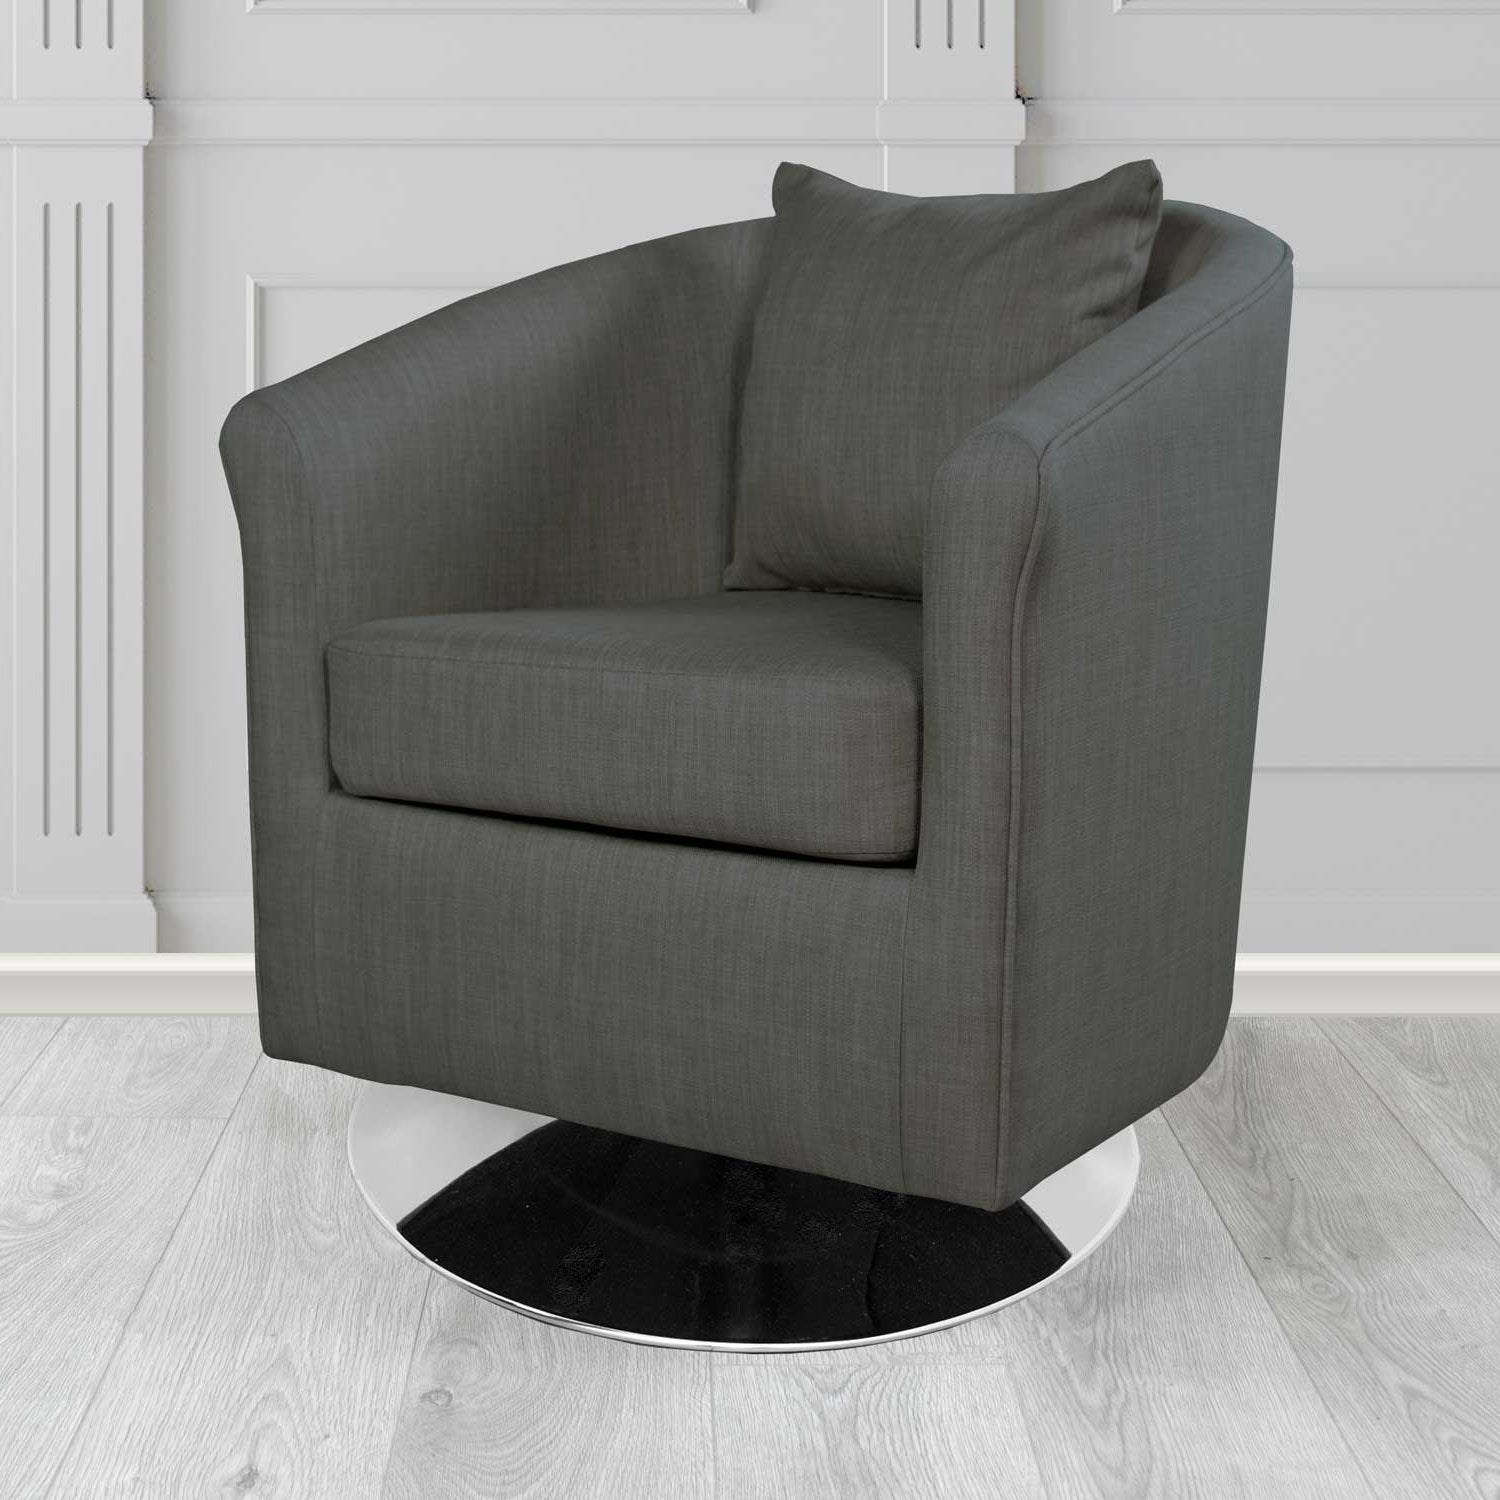 St Tropez Charles Charcoal Plain Linen Fabric Swivel Tub Chair - The Tub Chair Shop